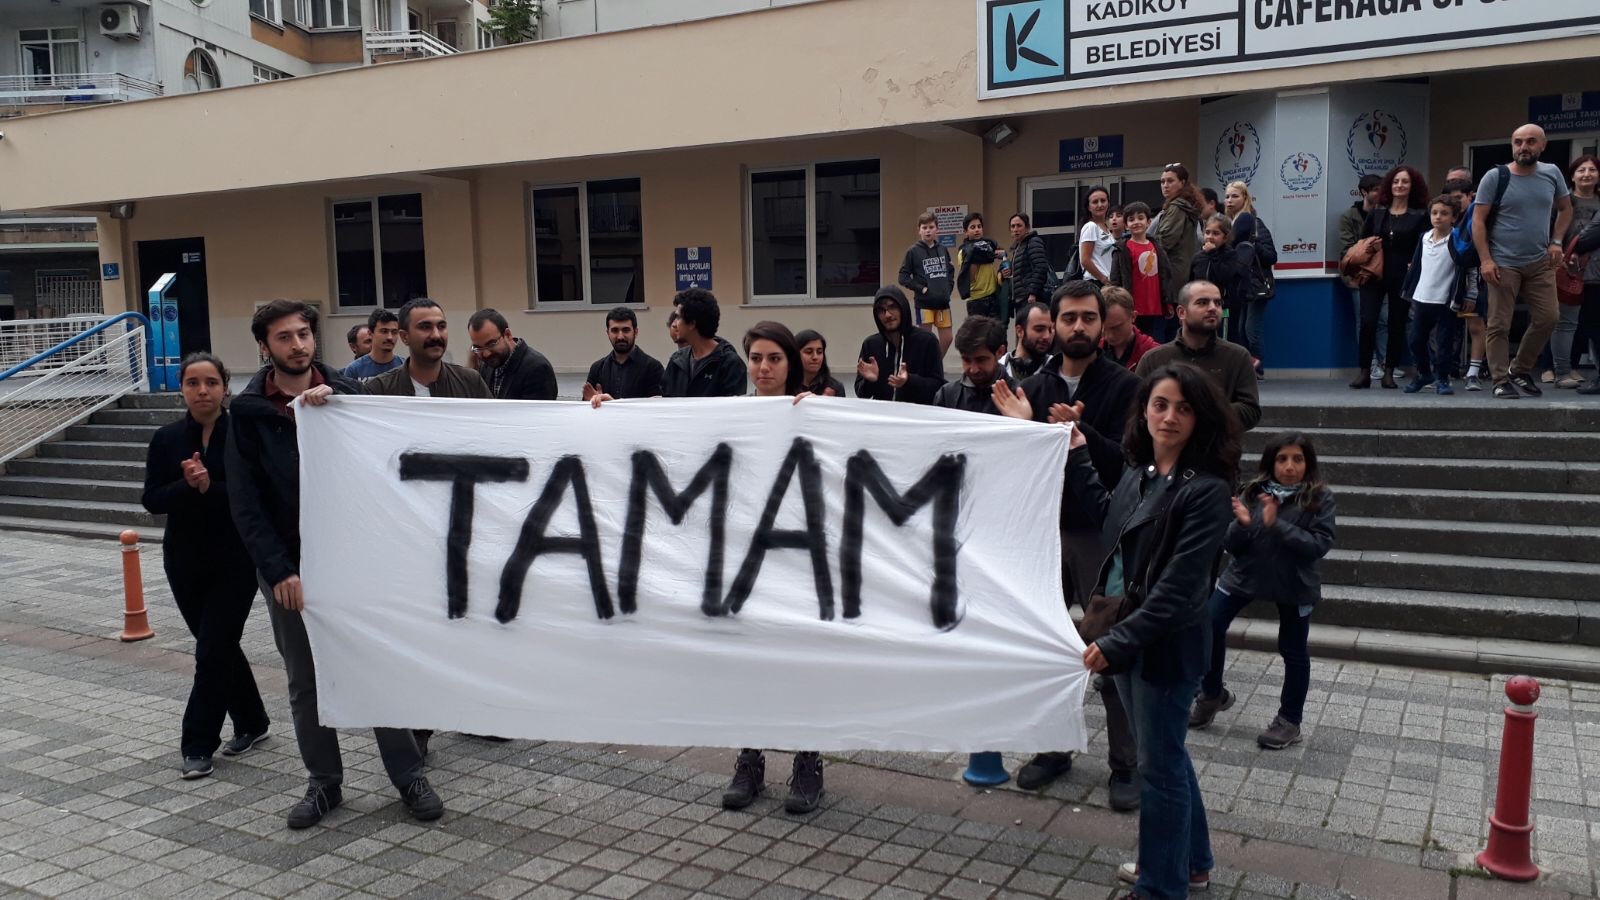 Kadıköy’de Gerçekleştirilen “T A M A M” Eylemine Polis Saldırısı: 10 Kişi Gözaltına Alındı